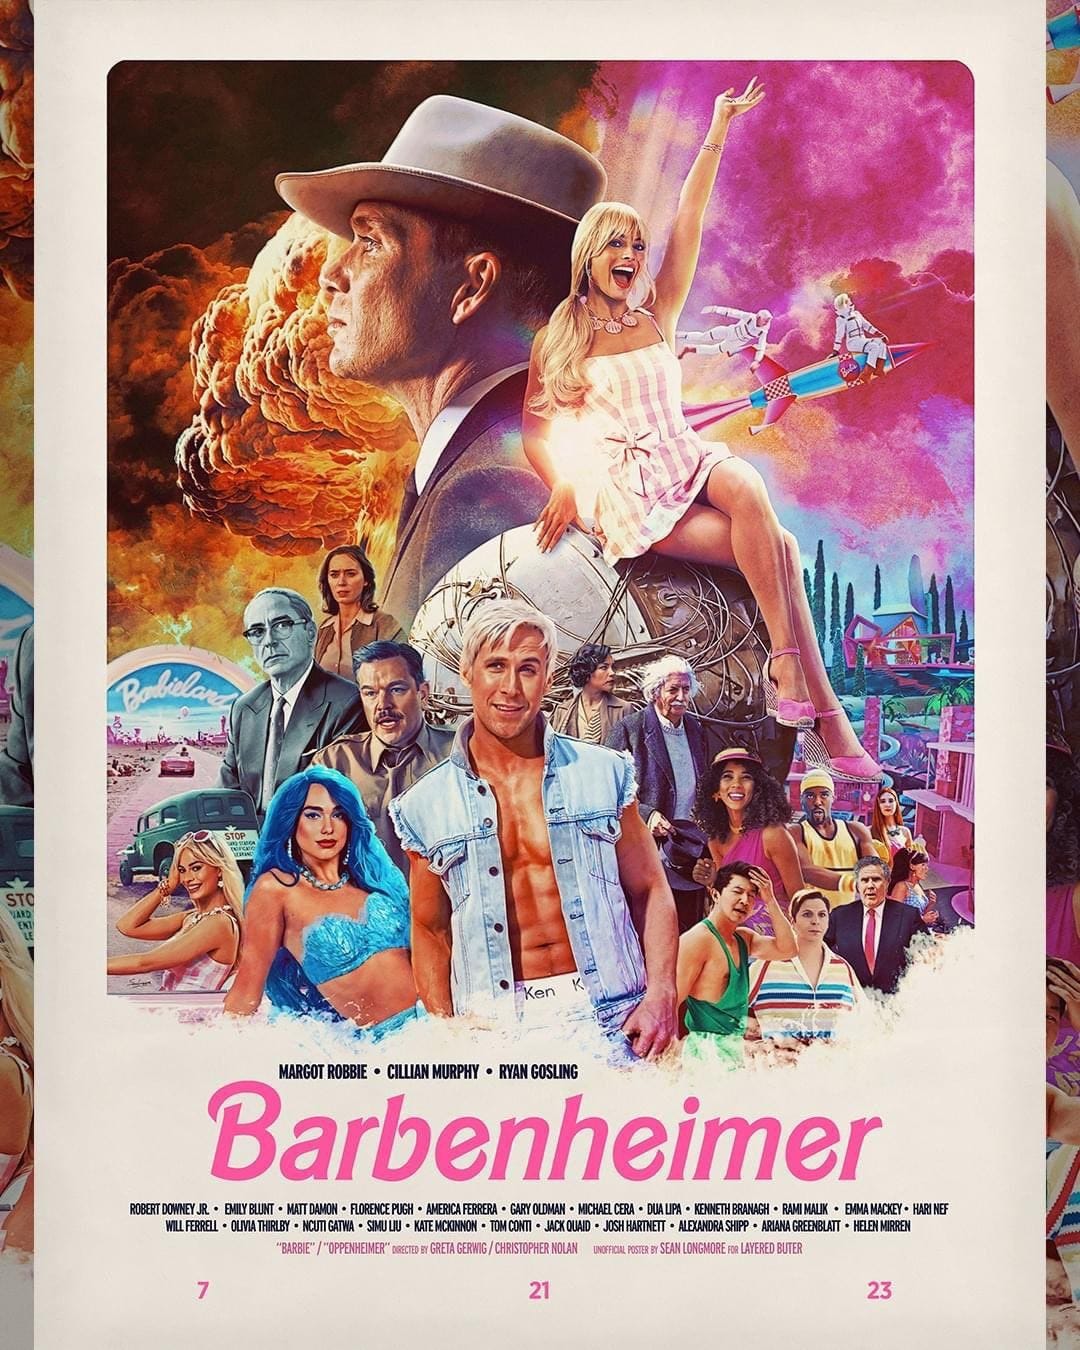 Barbenheimer' es una realidad: así es el brutal poster que fusiona 'Barbie'  y 'Oppenheimer' en una misma película